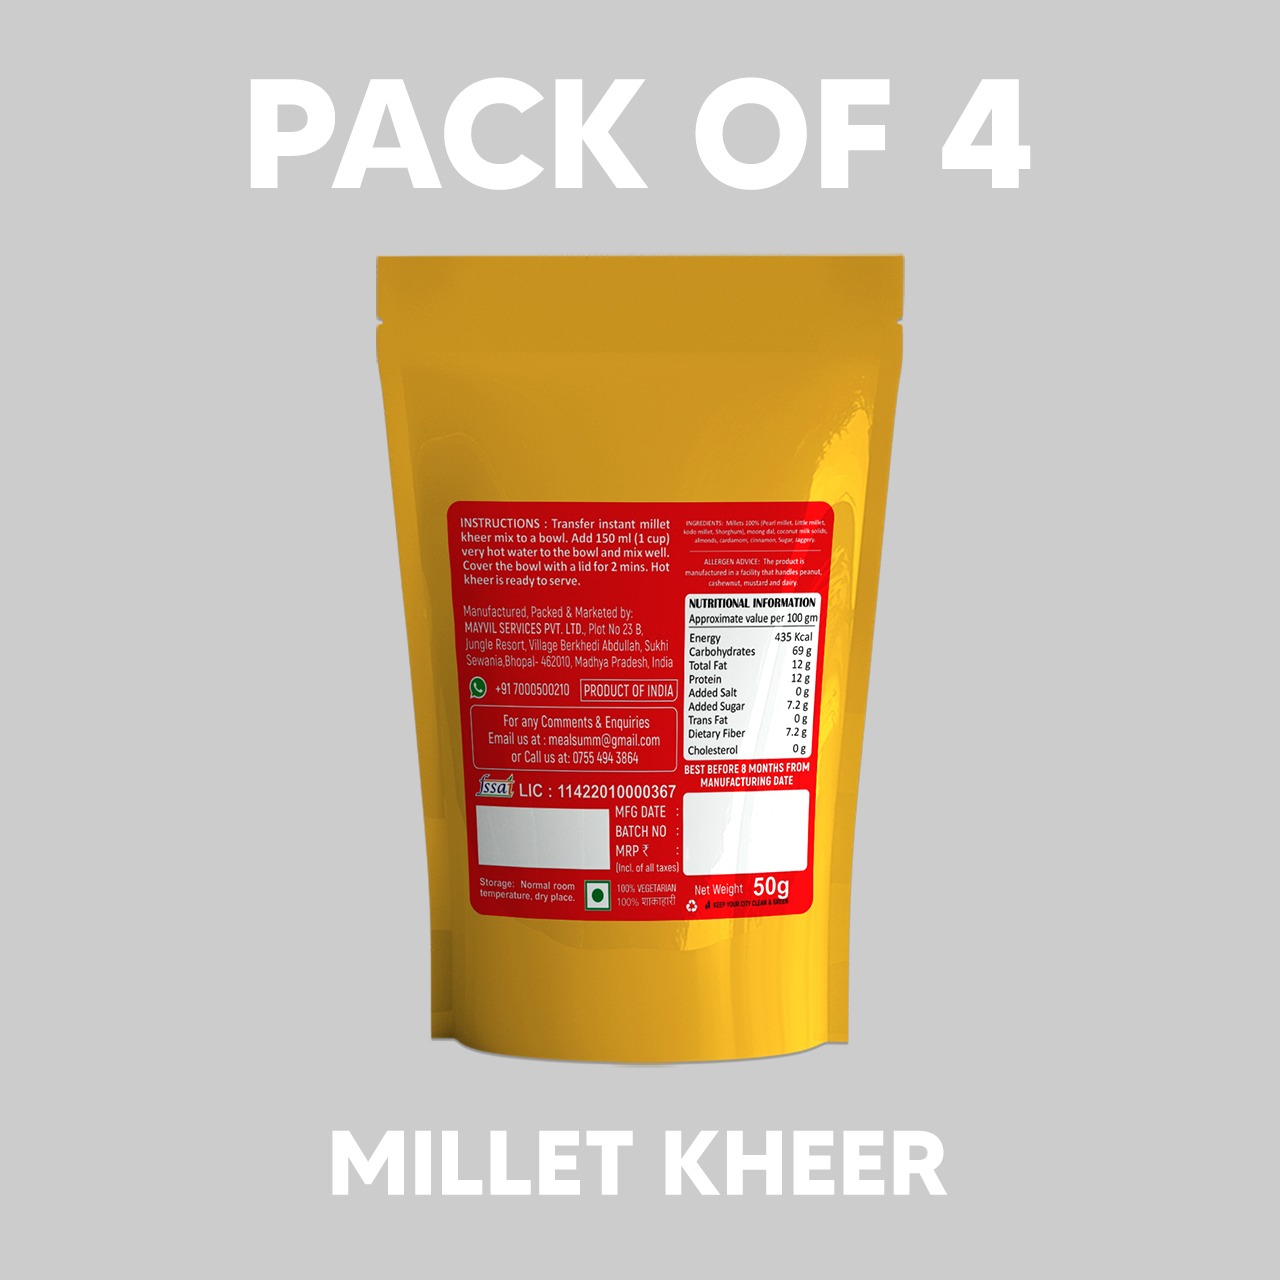 Almond Millet Kheer Mix (100% millet, gluten free payasam)- 200 gm